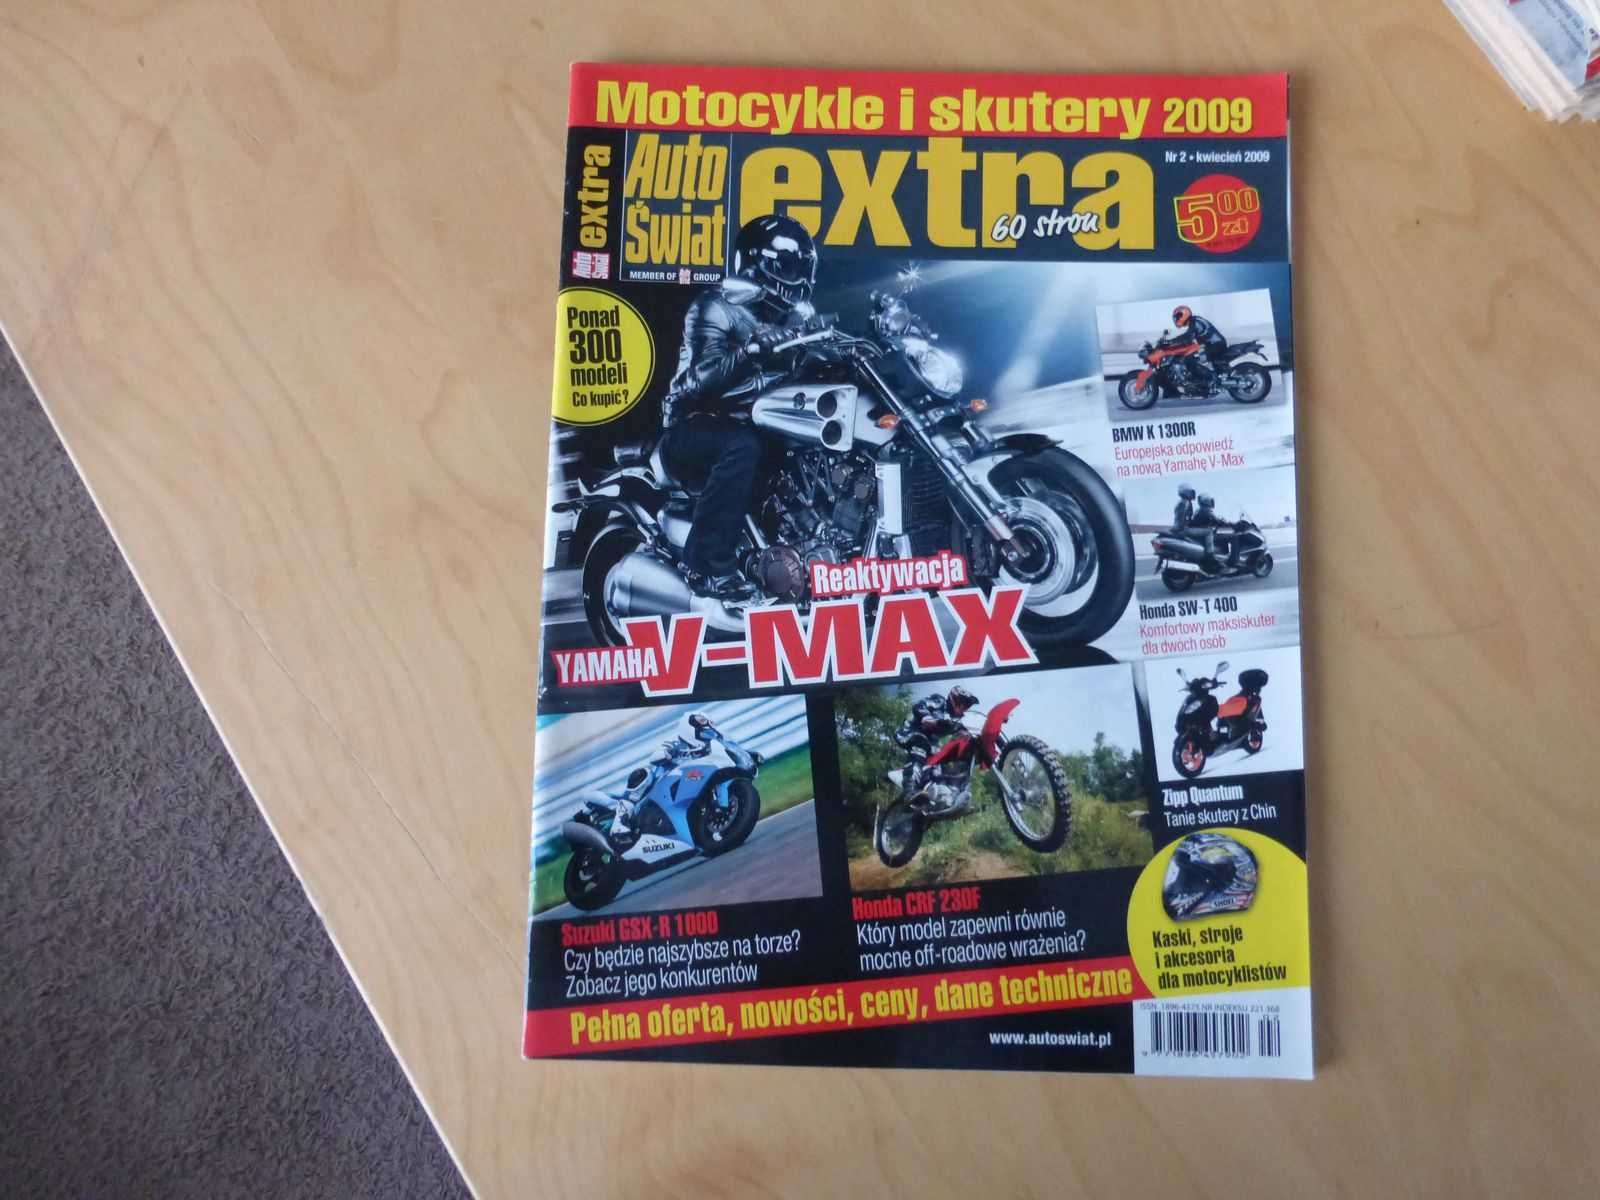 Katalog Auto Świat Extra Nr 2 kwiecień 2009. Motocykle i skutery 2009